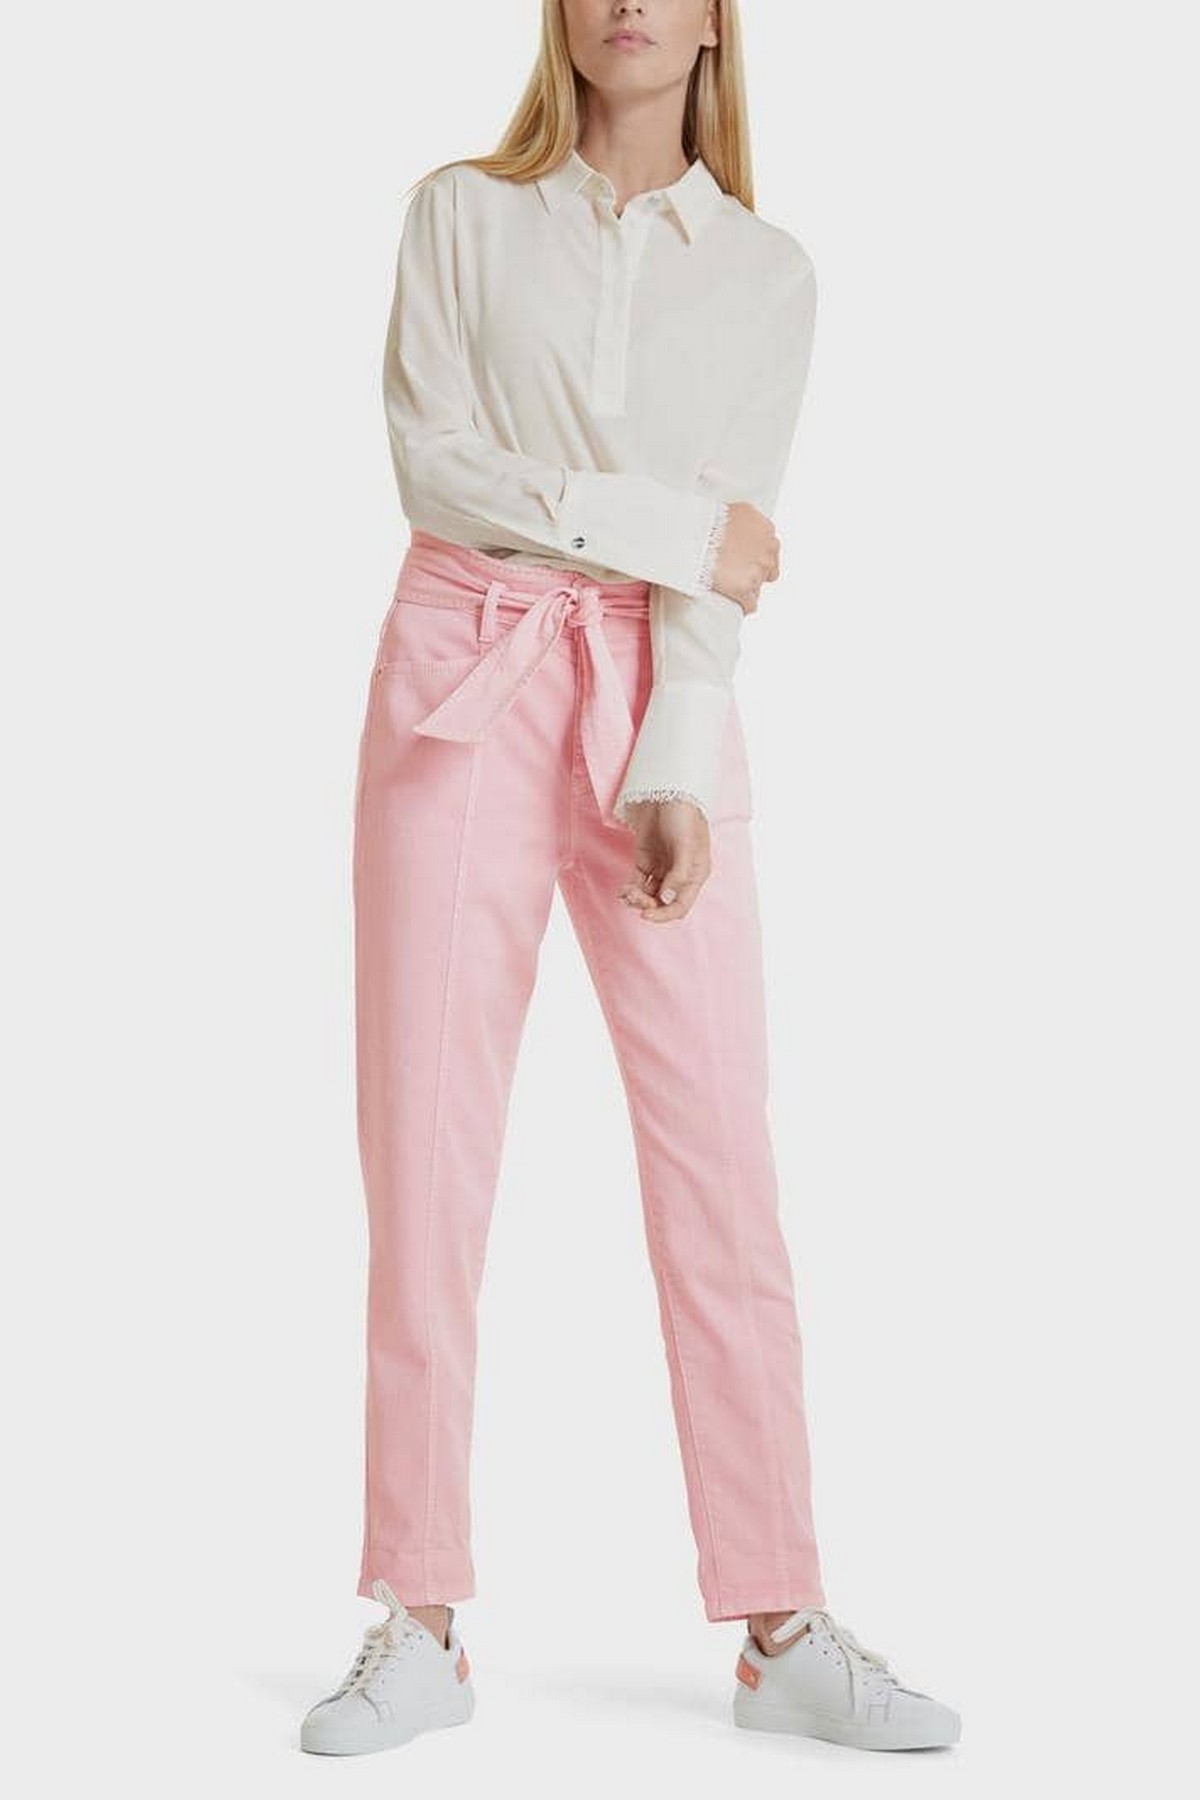 Marc Cain - SC 82.06 D60 219 - Jeans wijd met strikceintuur roze